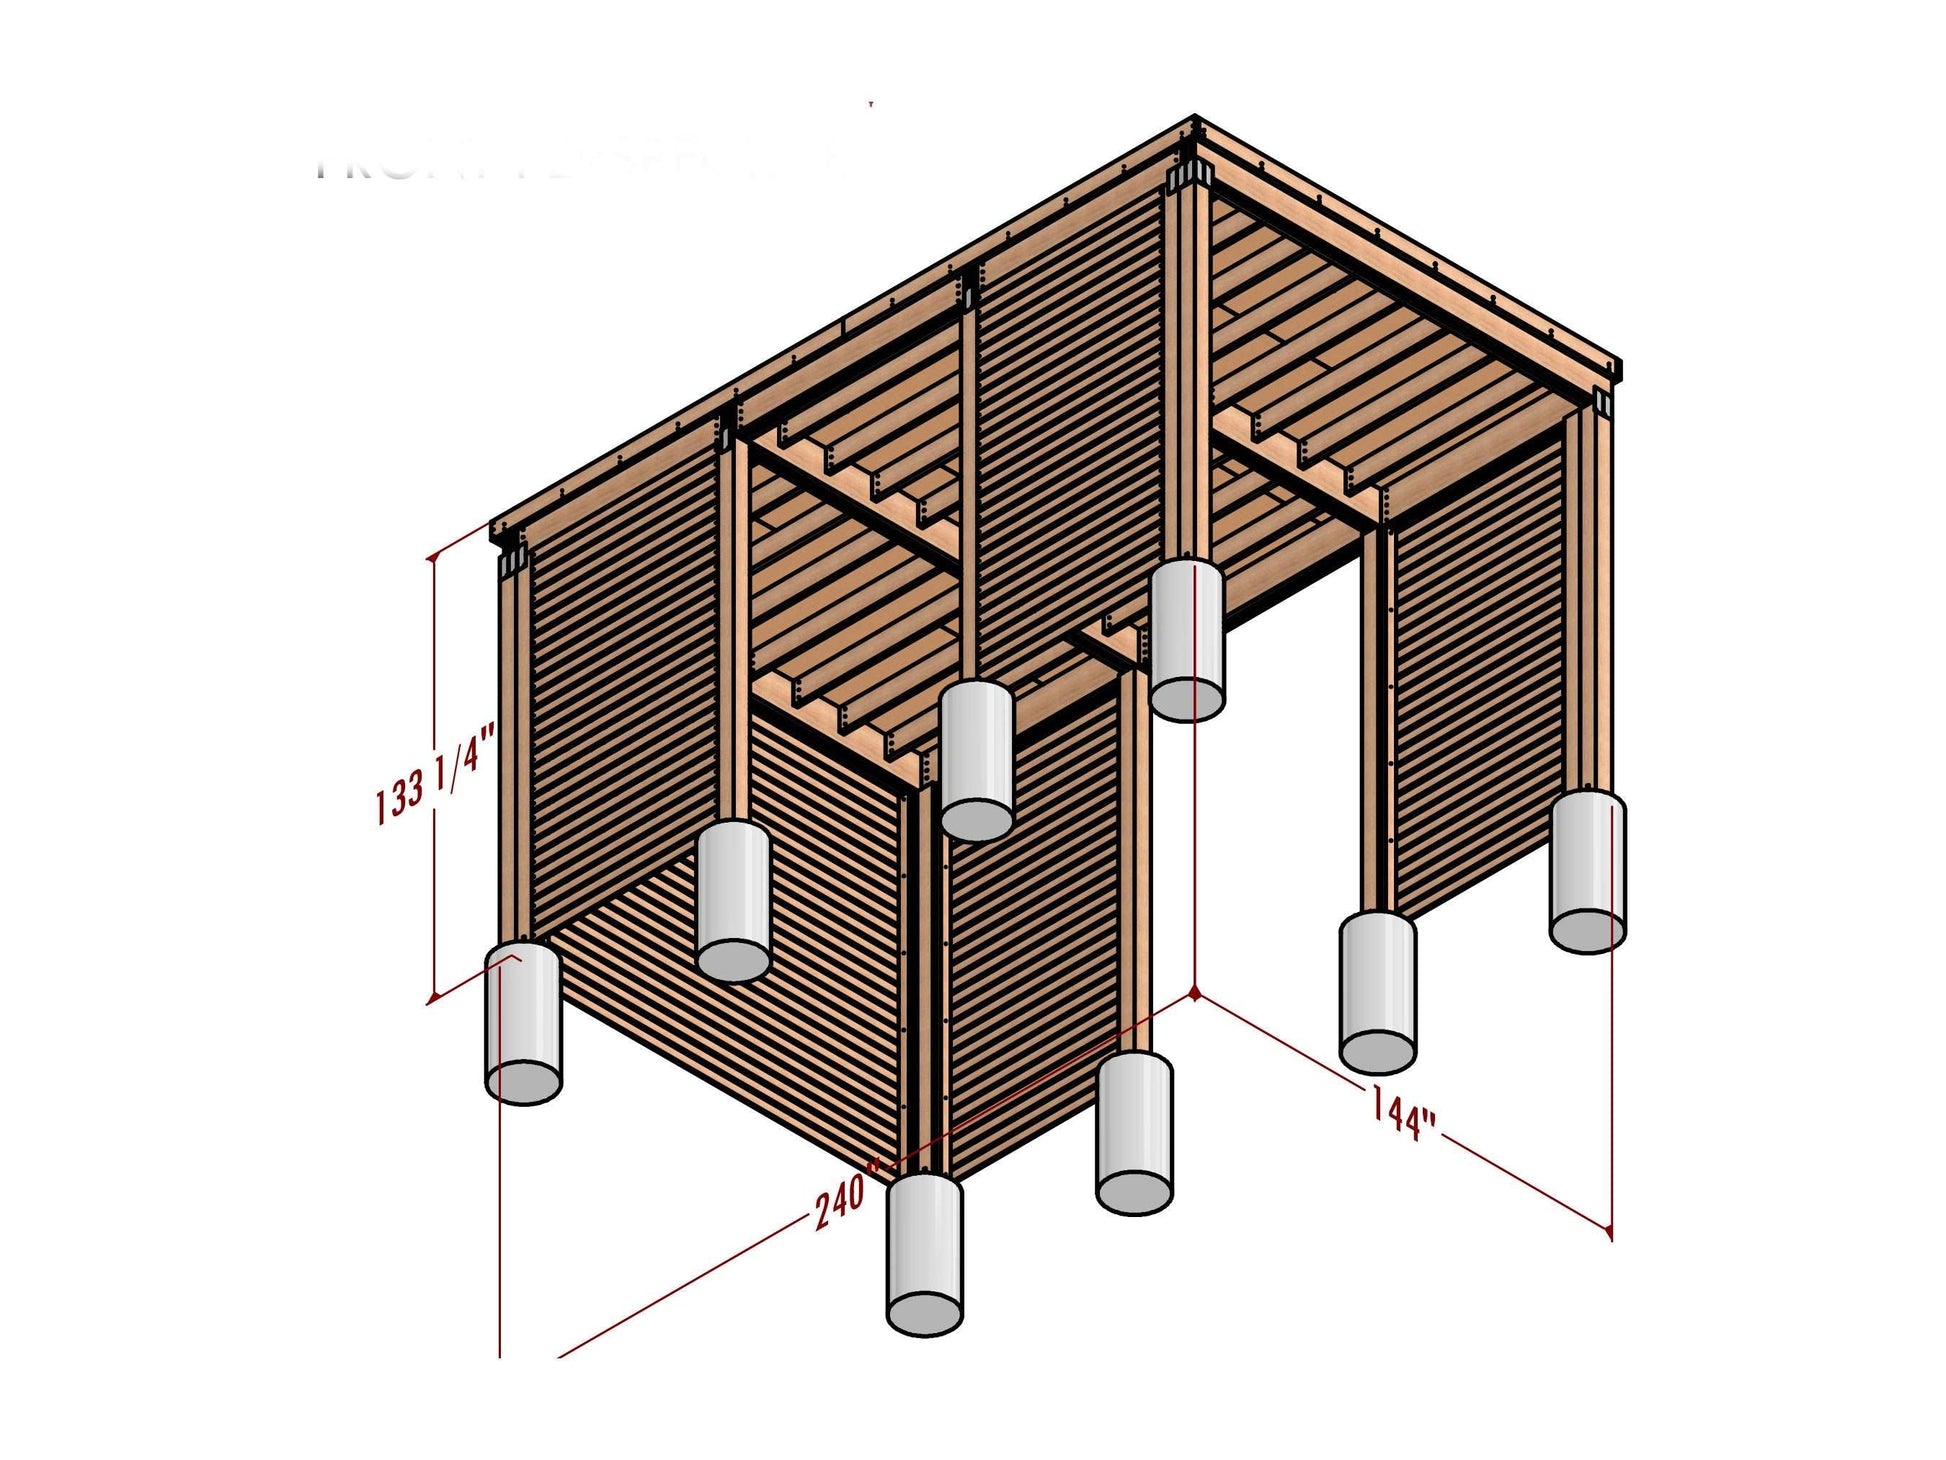 12x20 Modern Carport - Car Garage for One Car - Modern Pavilion Plans - Wooden Car Port